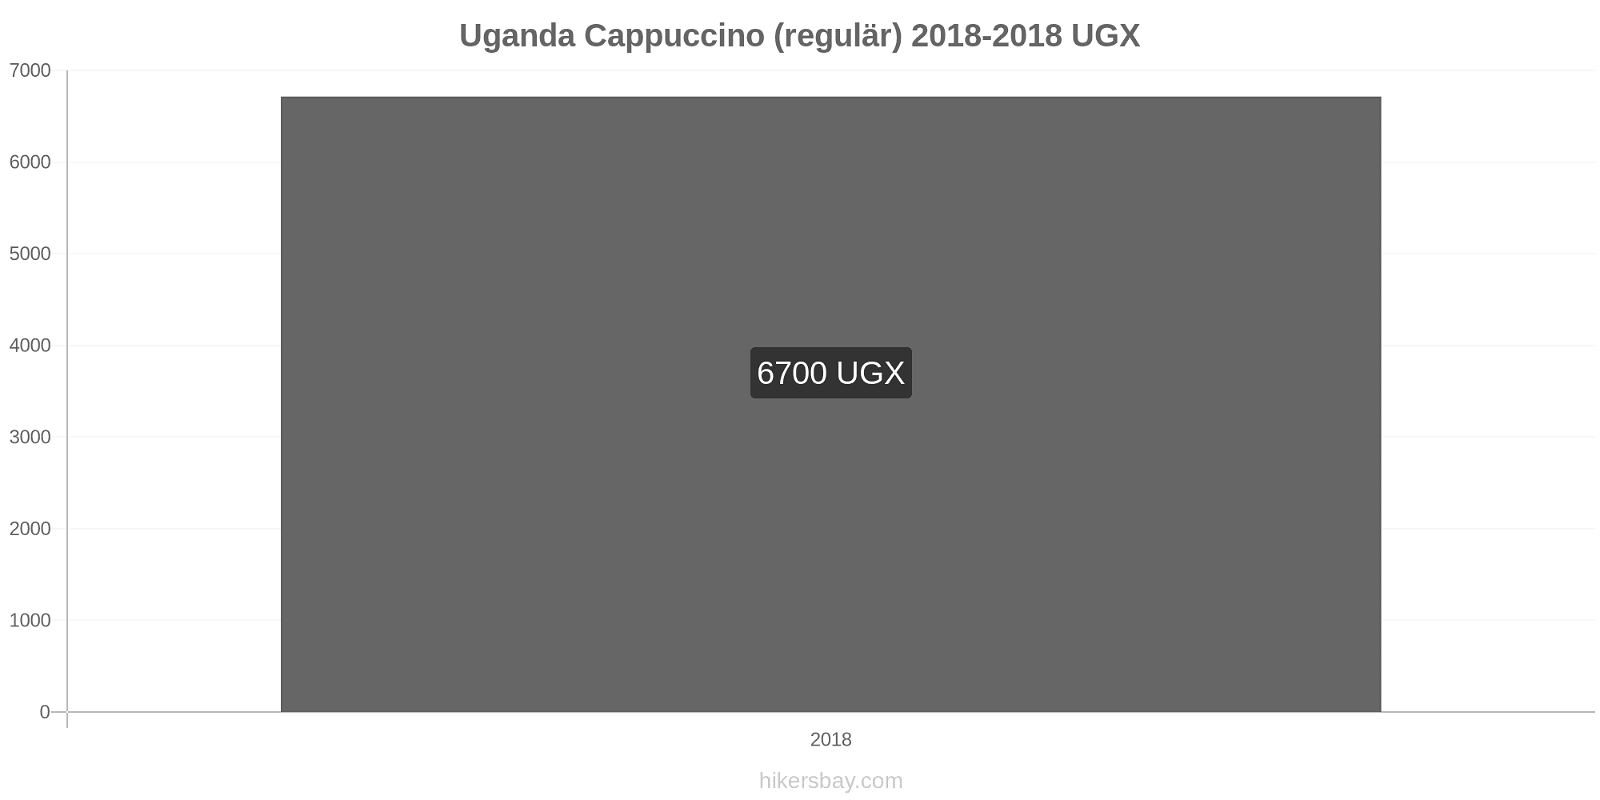 Uganda Preisänderungen Cappuccino hikersbay.com